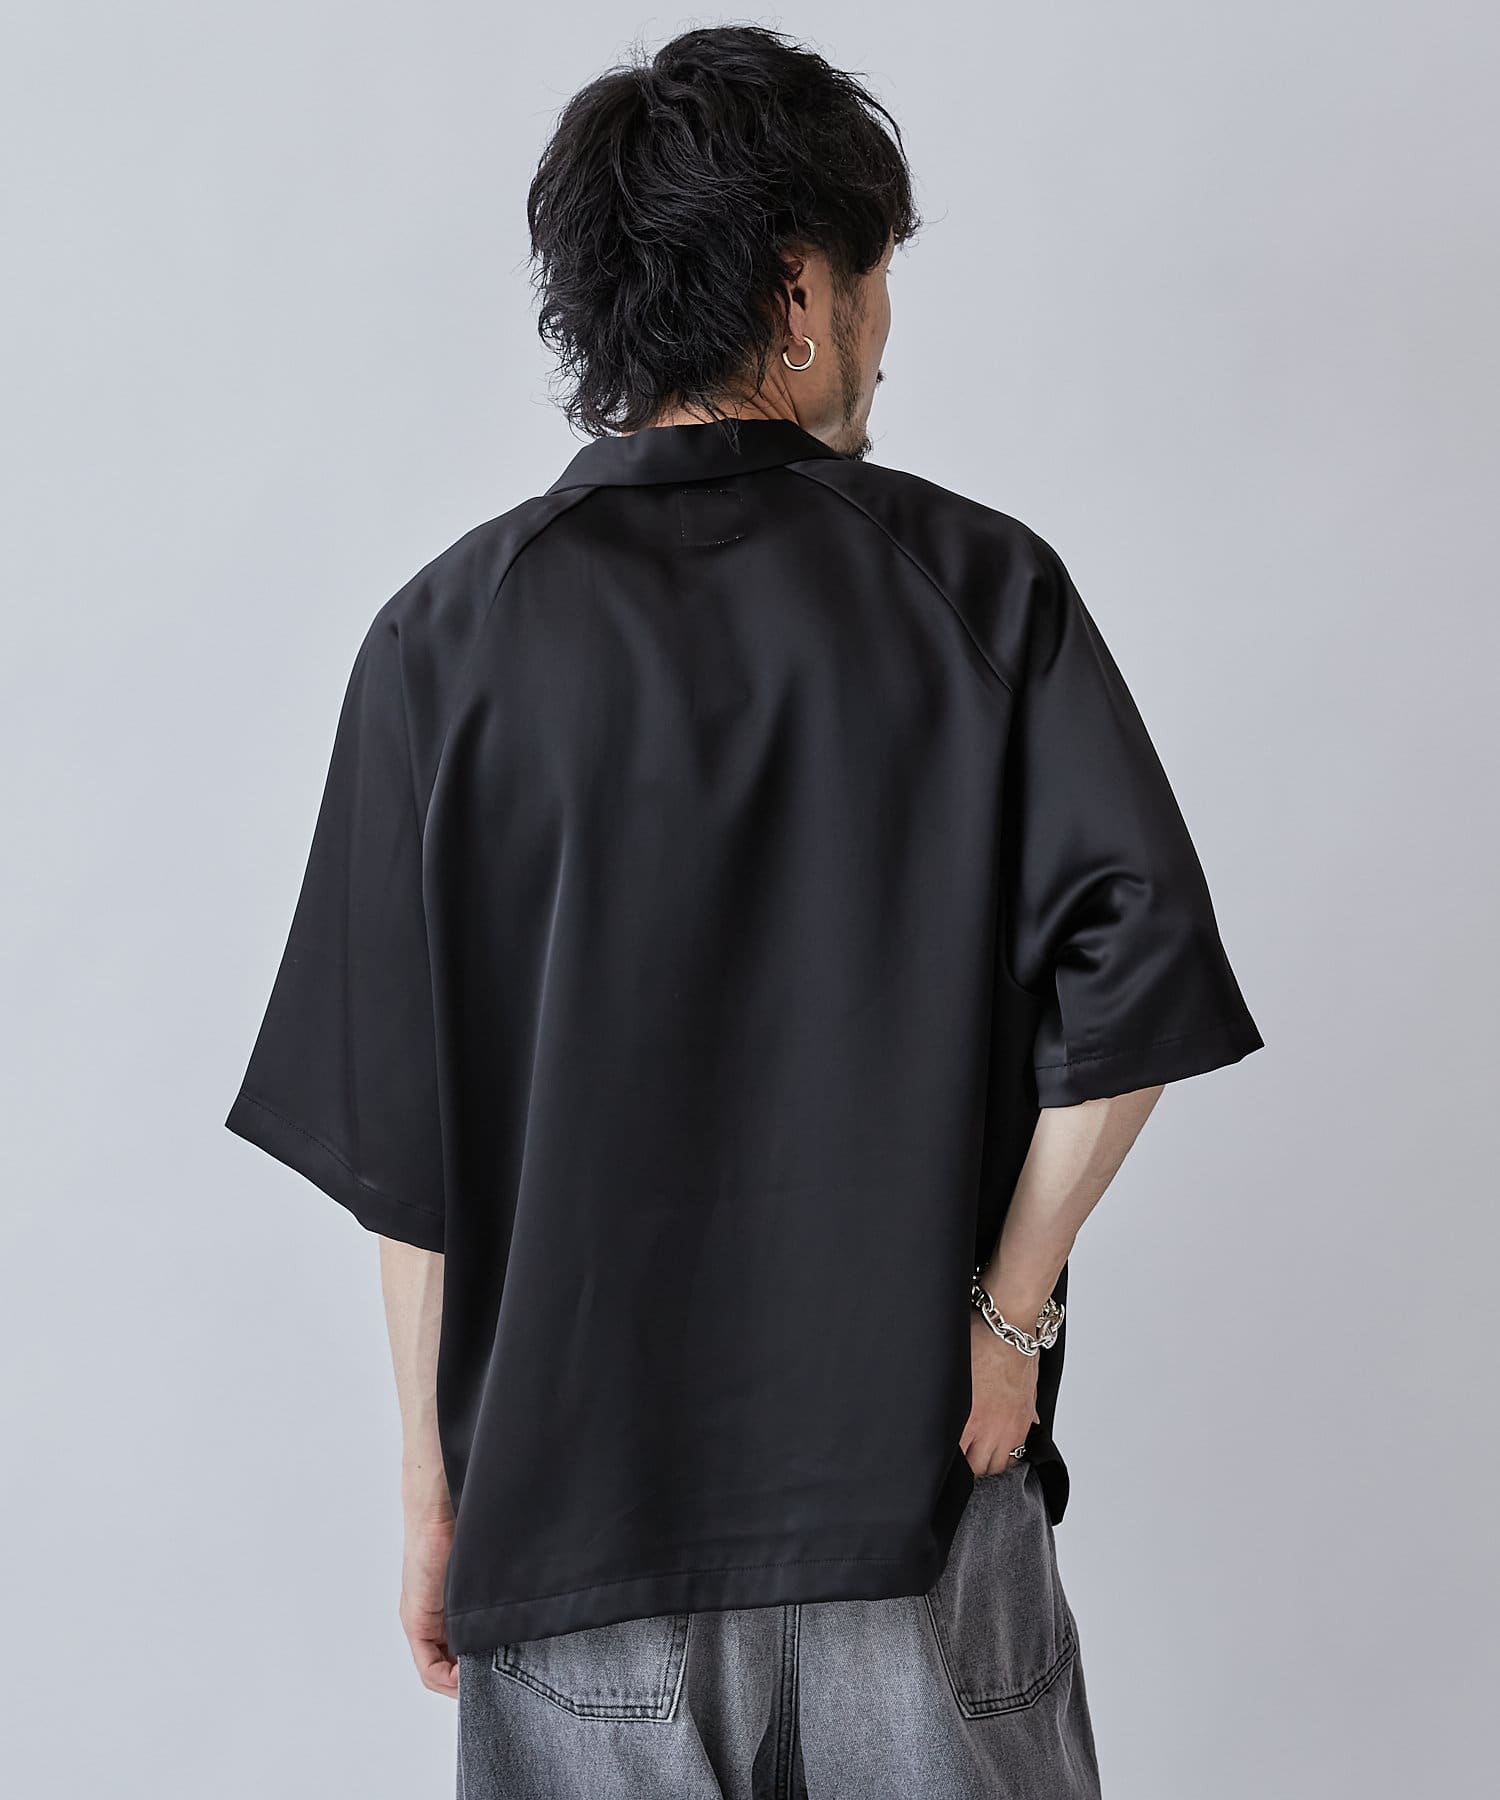 55364クーティ/レーヨンオープンカラー ショートスリーブシャツ/XL/ブラック/総柄